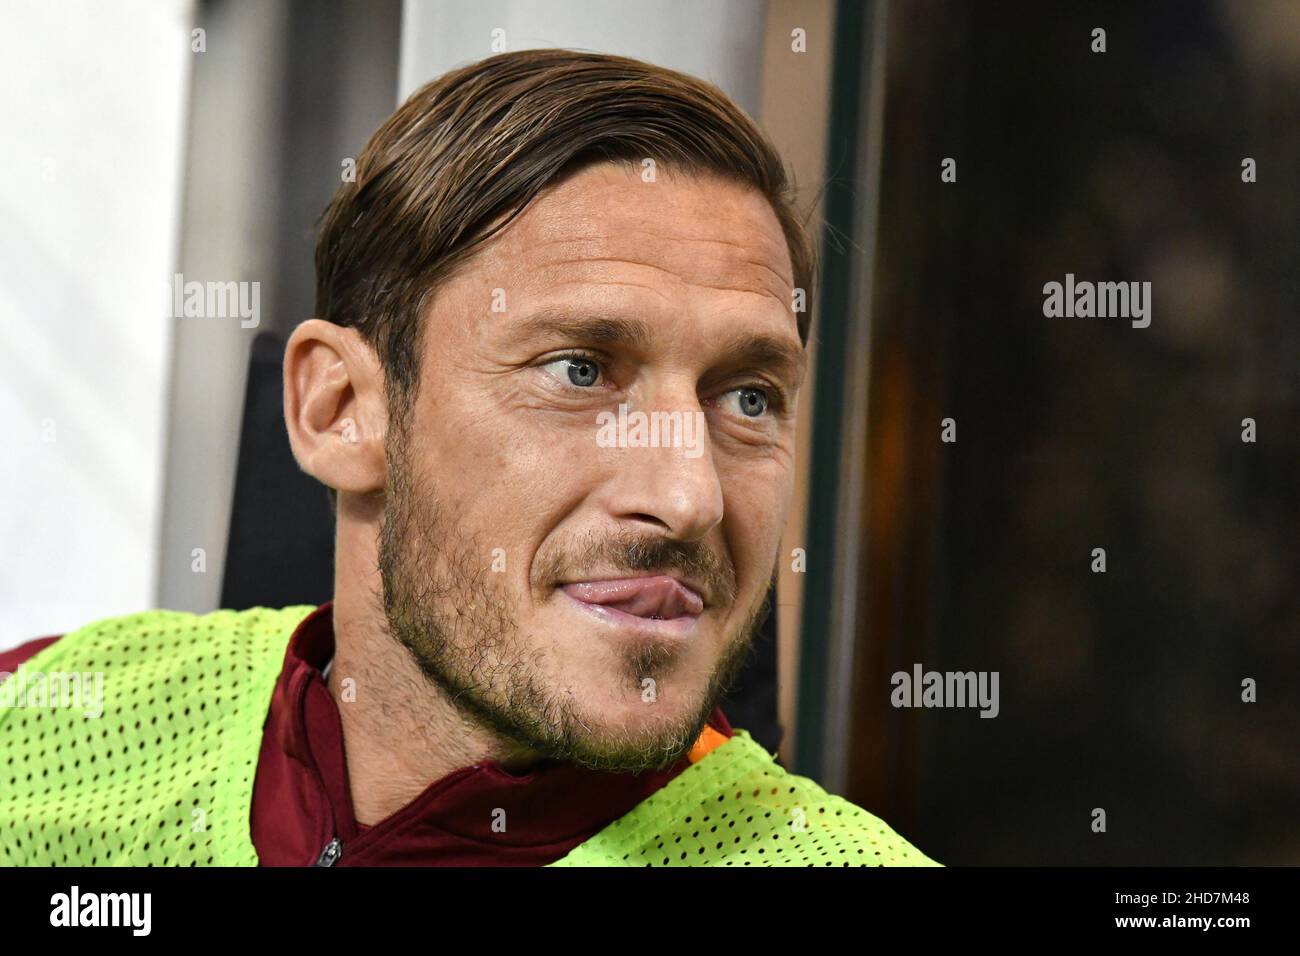 FRANCESCO Totti, el jugador de fútbol más destacado de Roma, se encuentra en el banquillo del estadio de san siro, en Milán, en 2017. Foto de stock